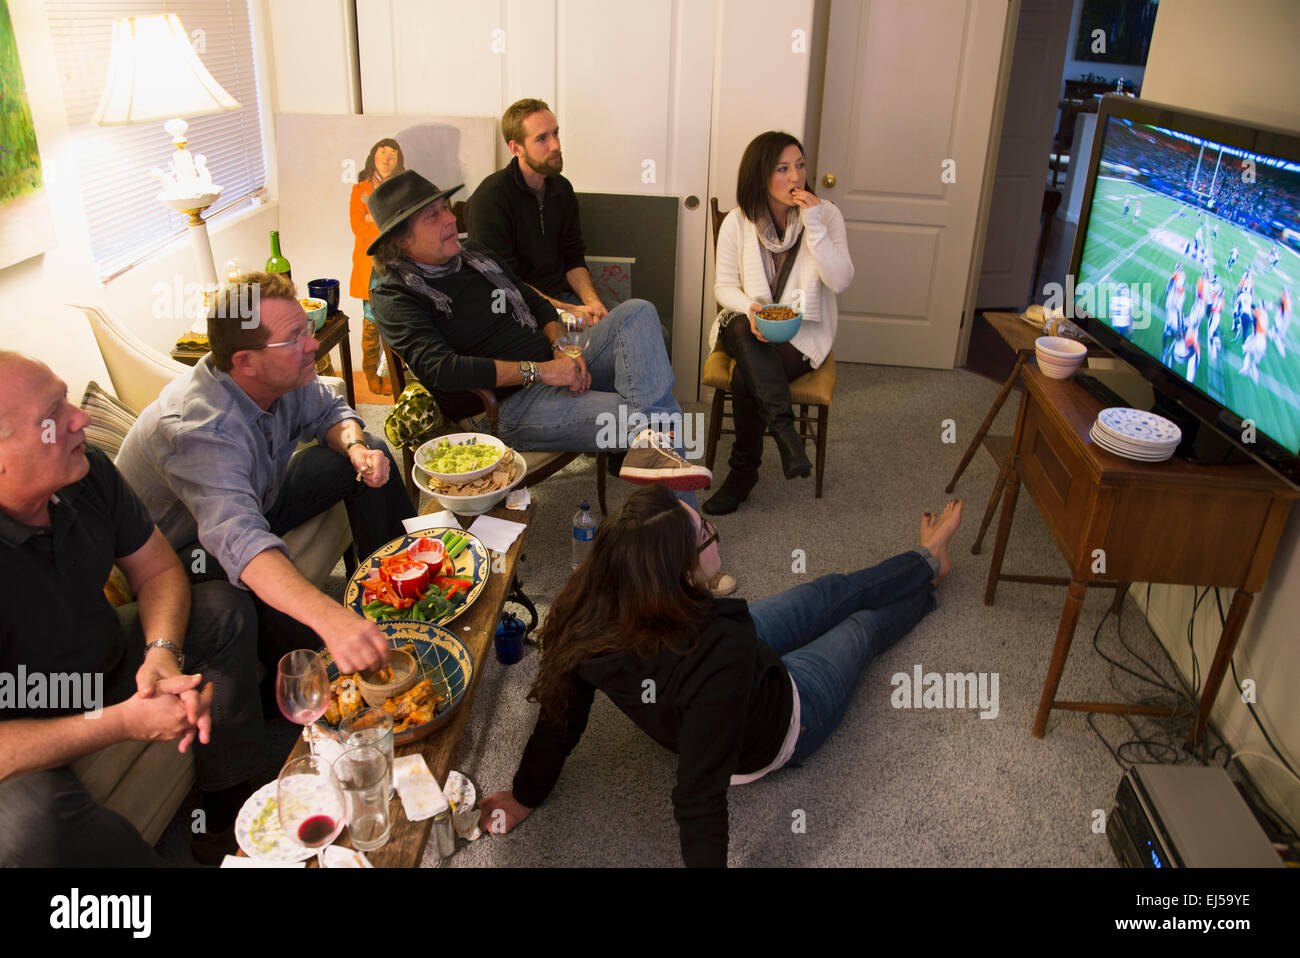 Groupe de personnes watch NFL Superbowl XLVIII à la télévision, le 2 février 2014, Denver Broncos vs. Seattle Seahwaks Banque D'Images